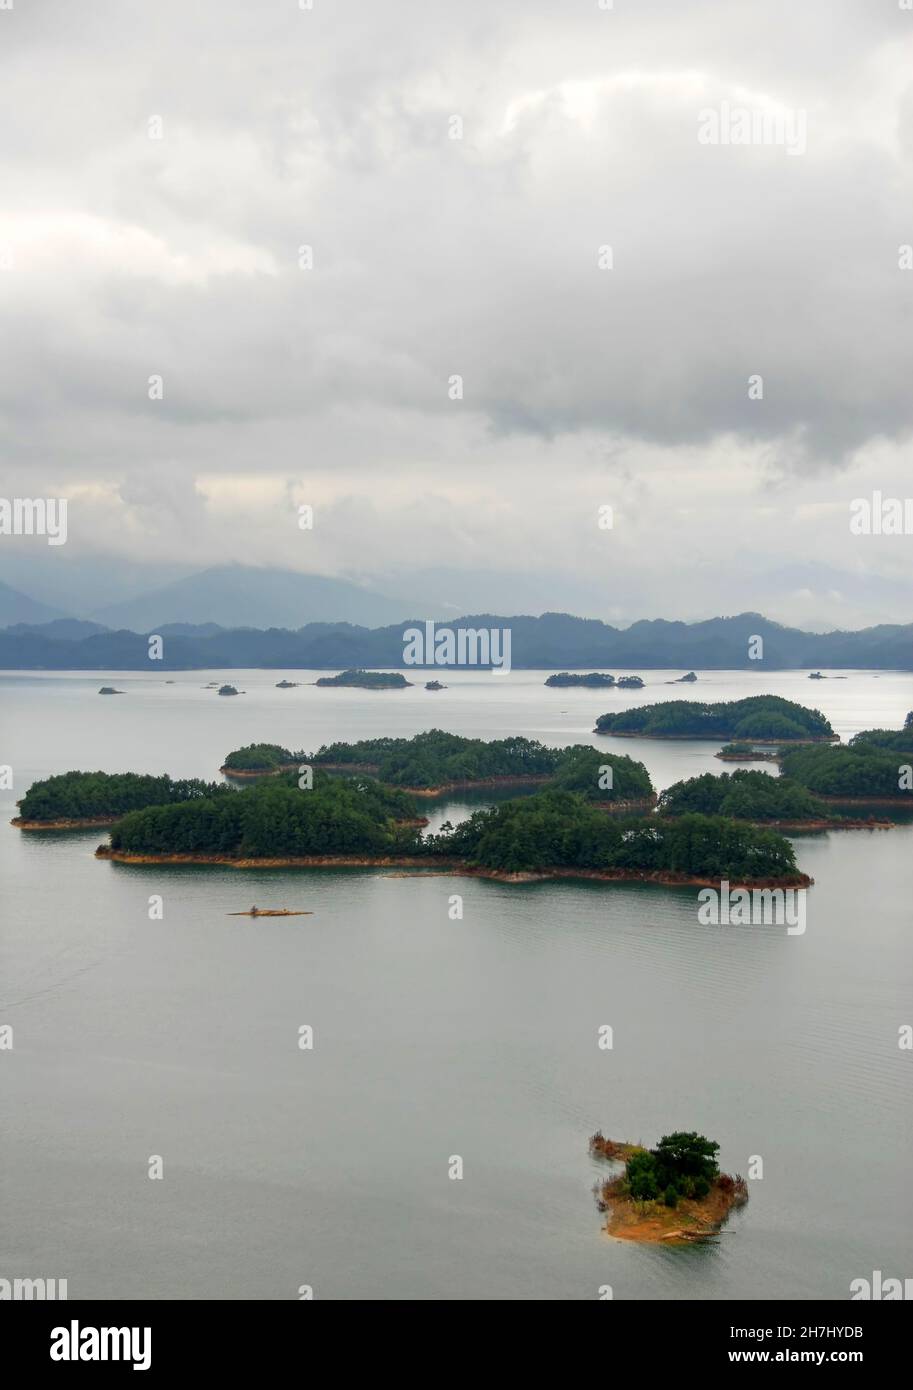 Qiandao Hu, province de Zhejiang, Chine : vue sur le lac et les îles sous un ciel spectaculaire.Qiandao Hu se traduit par Thousand Island Lake. Banque D'Images